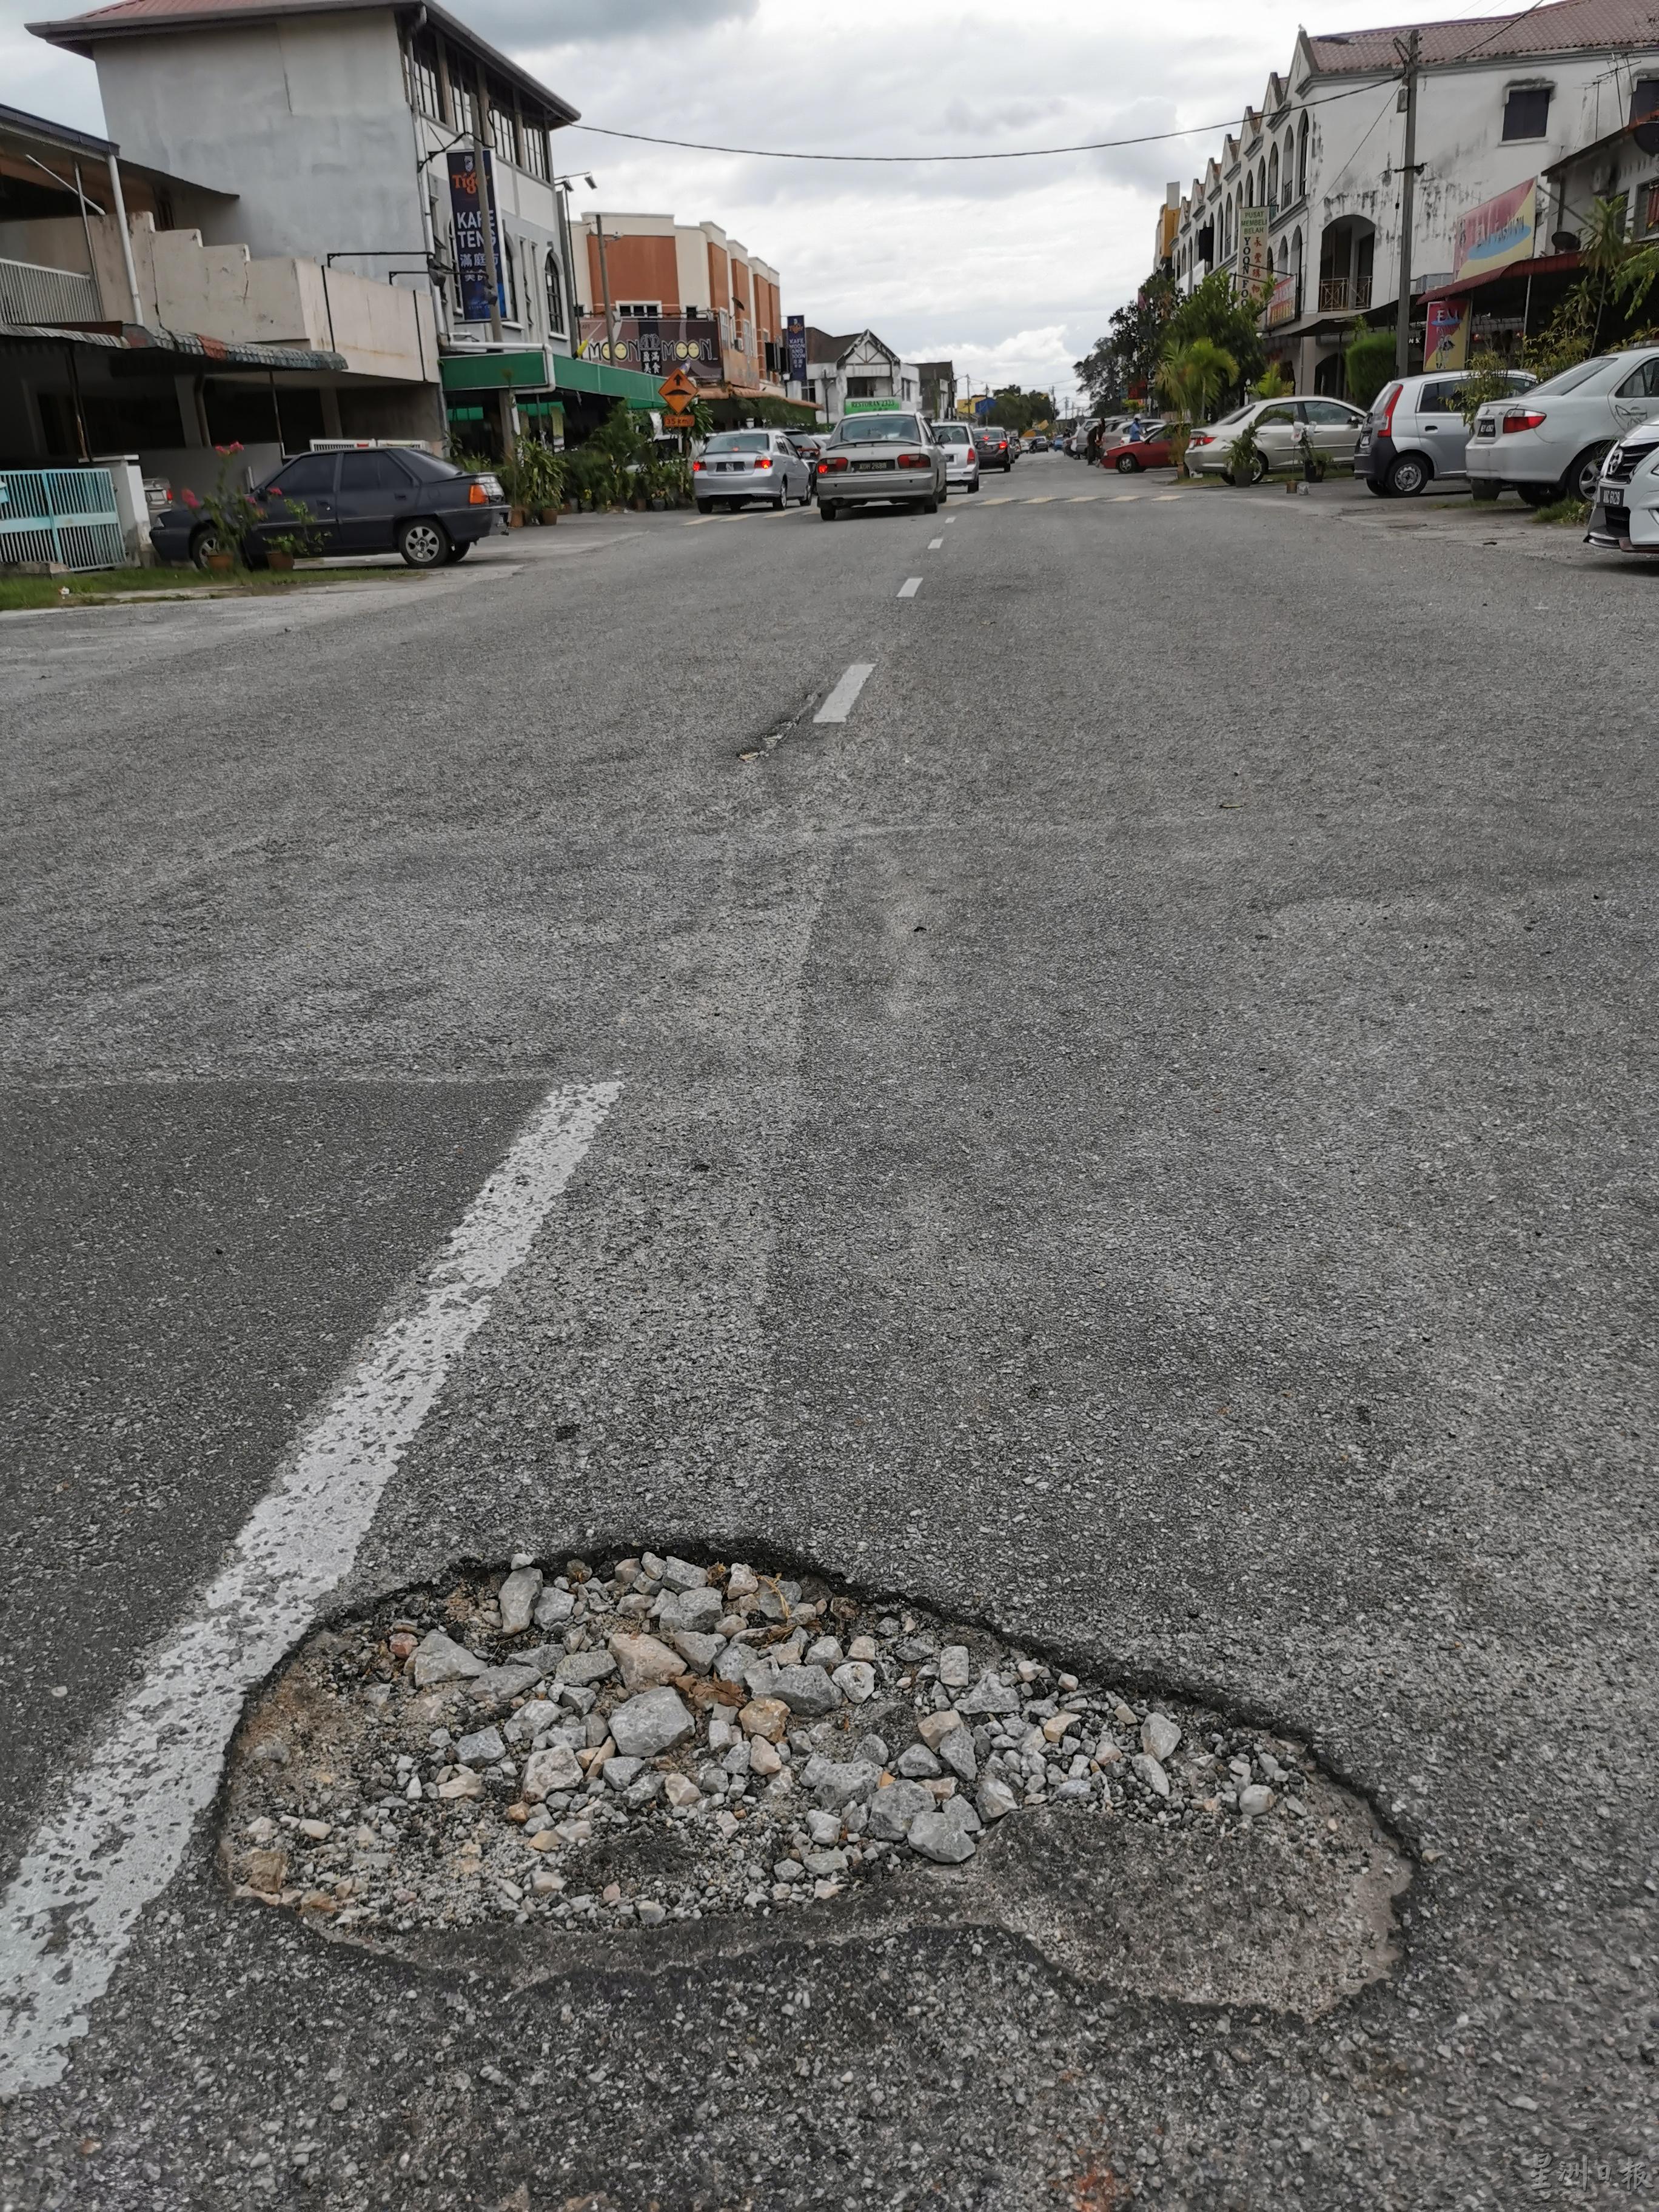 怡保市政厅在1月份申请20万令吉拨款以处理路洞问题。

